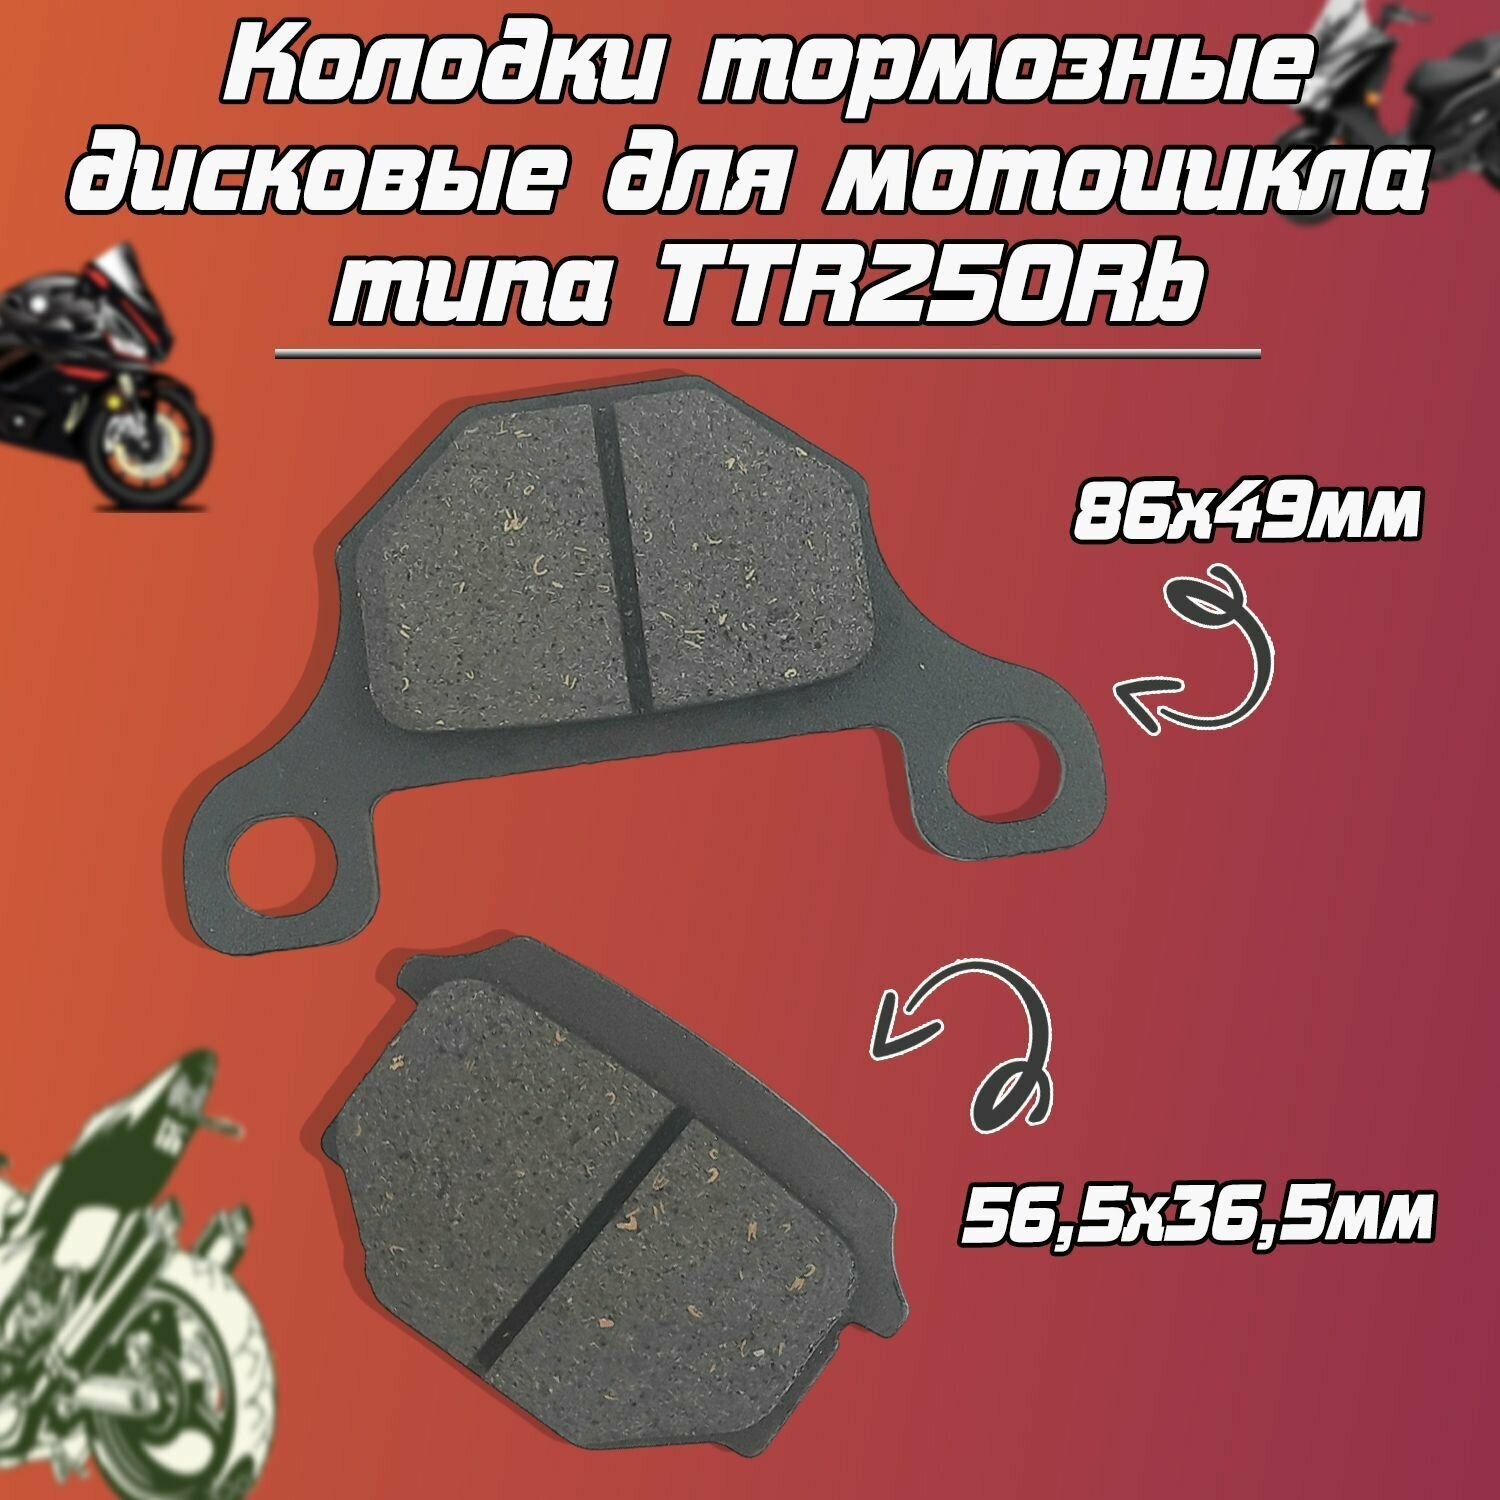 Колодки тормозные дисковые для мотоцикла типа TTR250Rb GR (зад.).